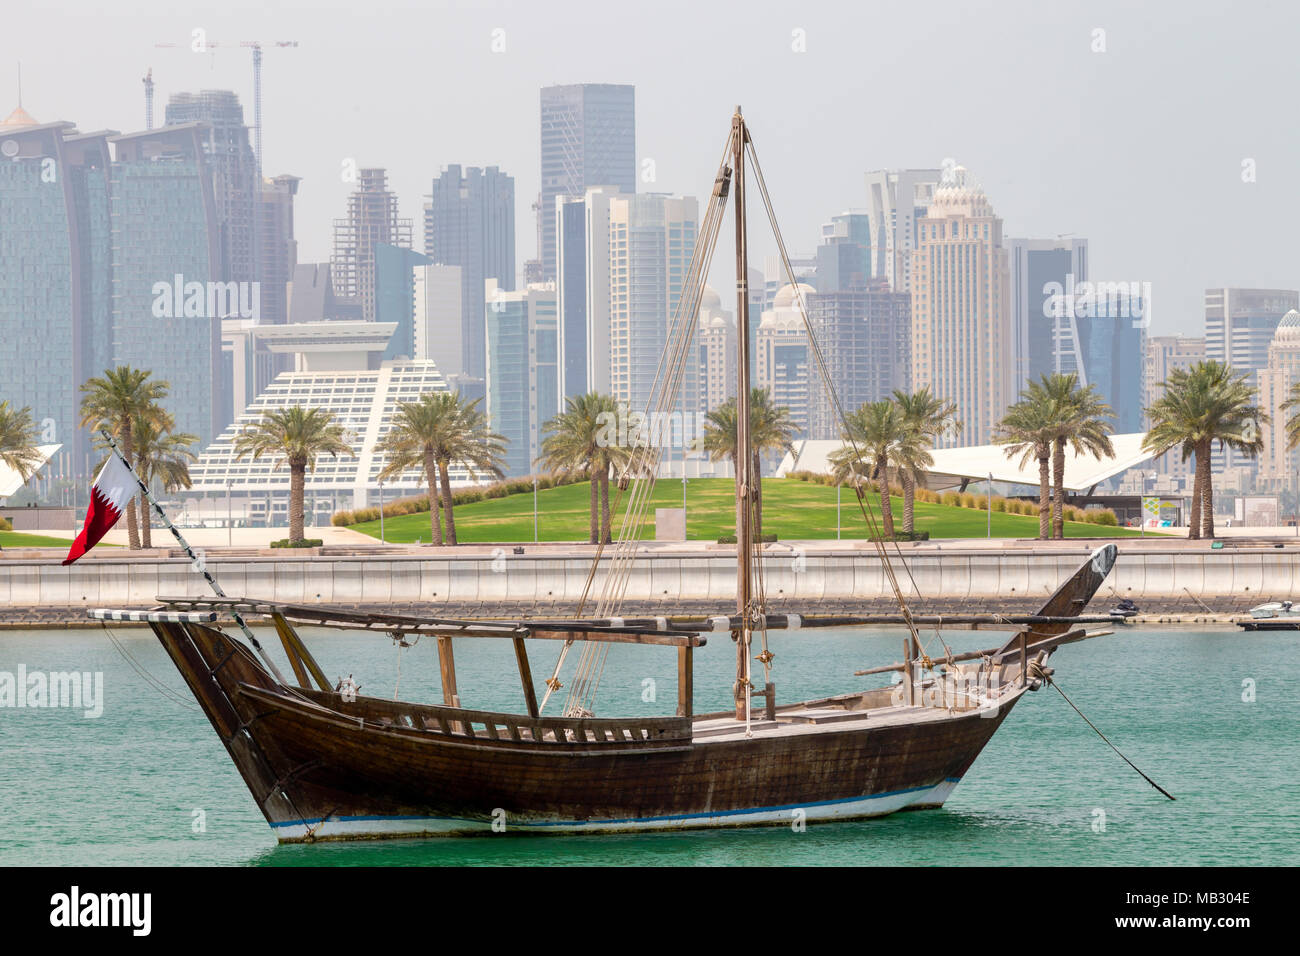 DOHA, Katar - 5. April 2018: einer traditionellen Dhau in das Museum für Islamische Kunst Park festgemacht, mit Wolkenkratzern von Doha City hinter sich. Stockfoto